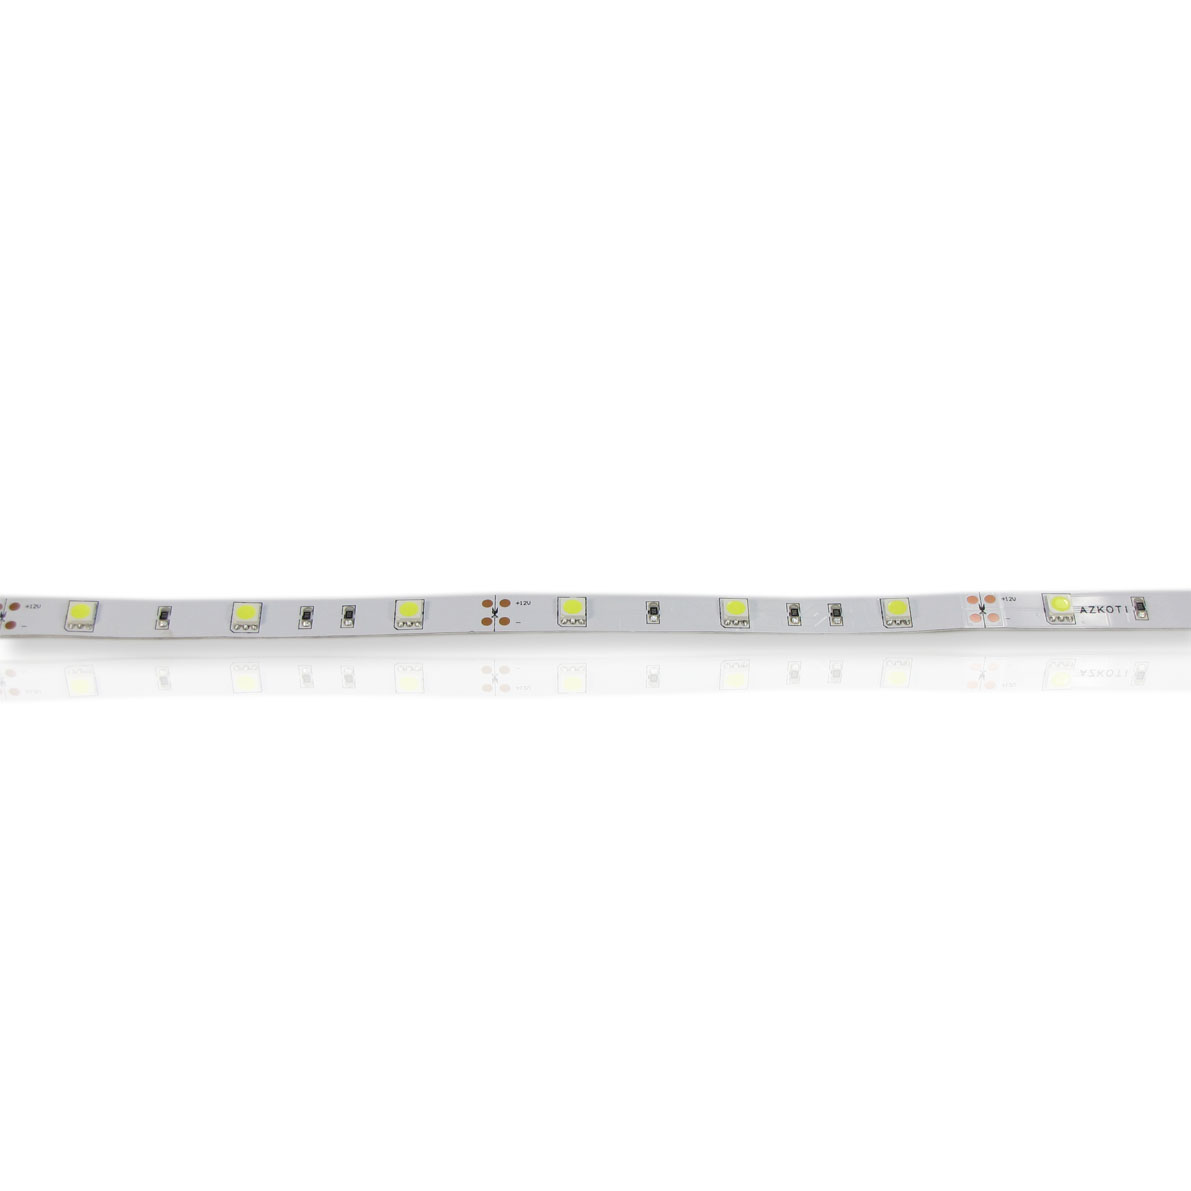 светодиодная лента standart pro class, 5050, 30 led/m, white, 12v, ip33, артикул 28133